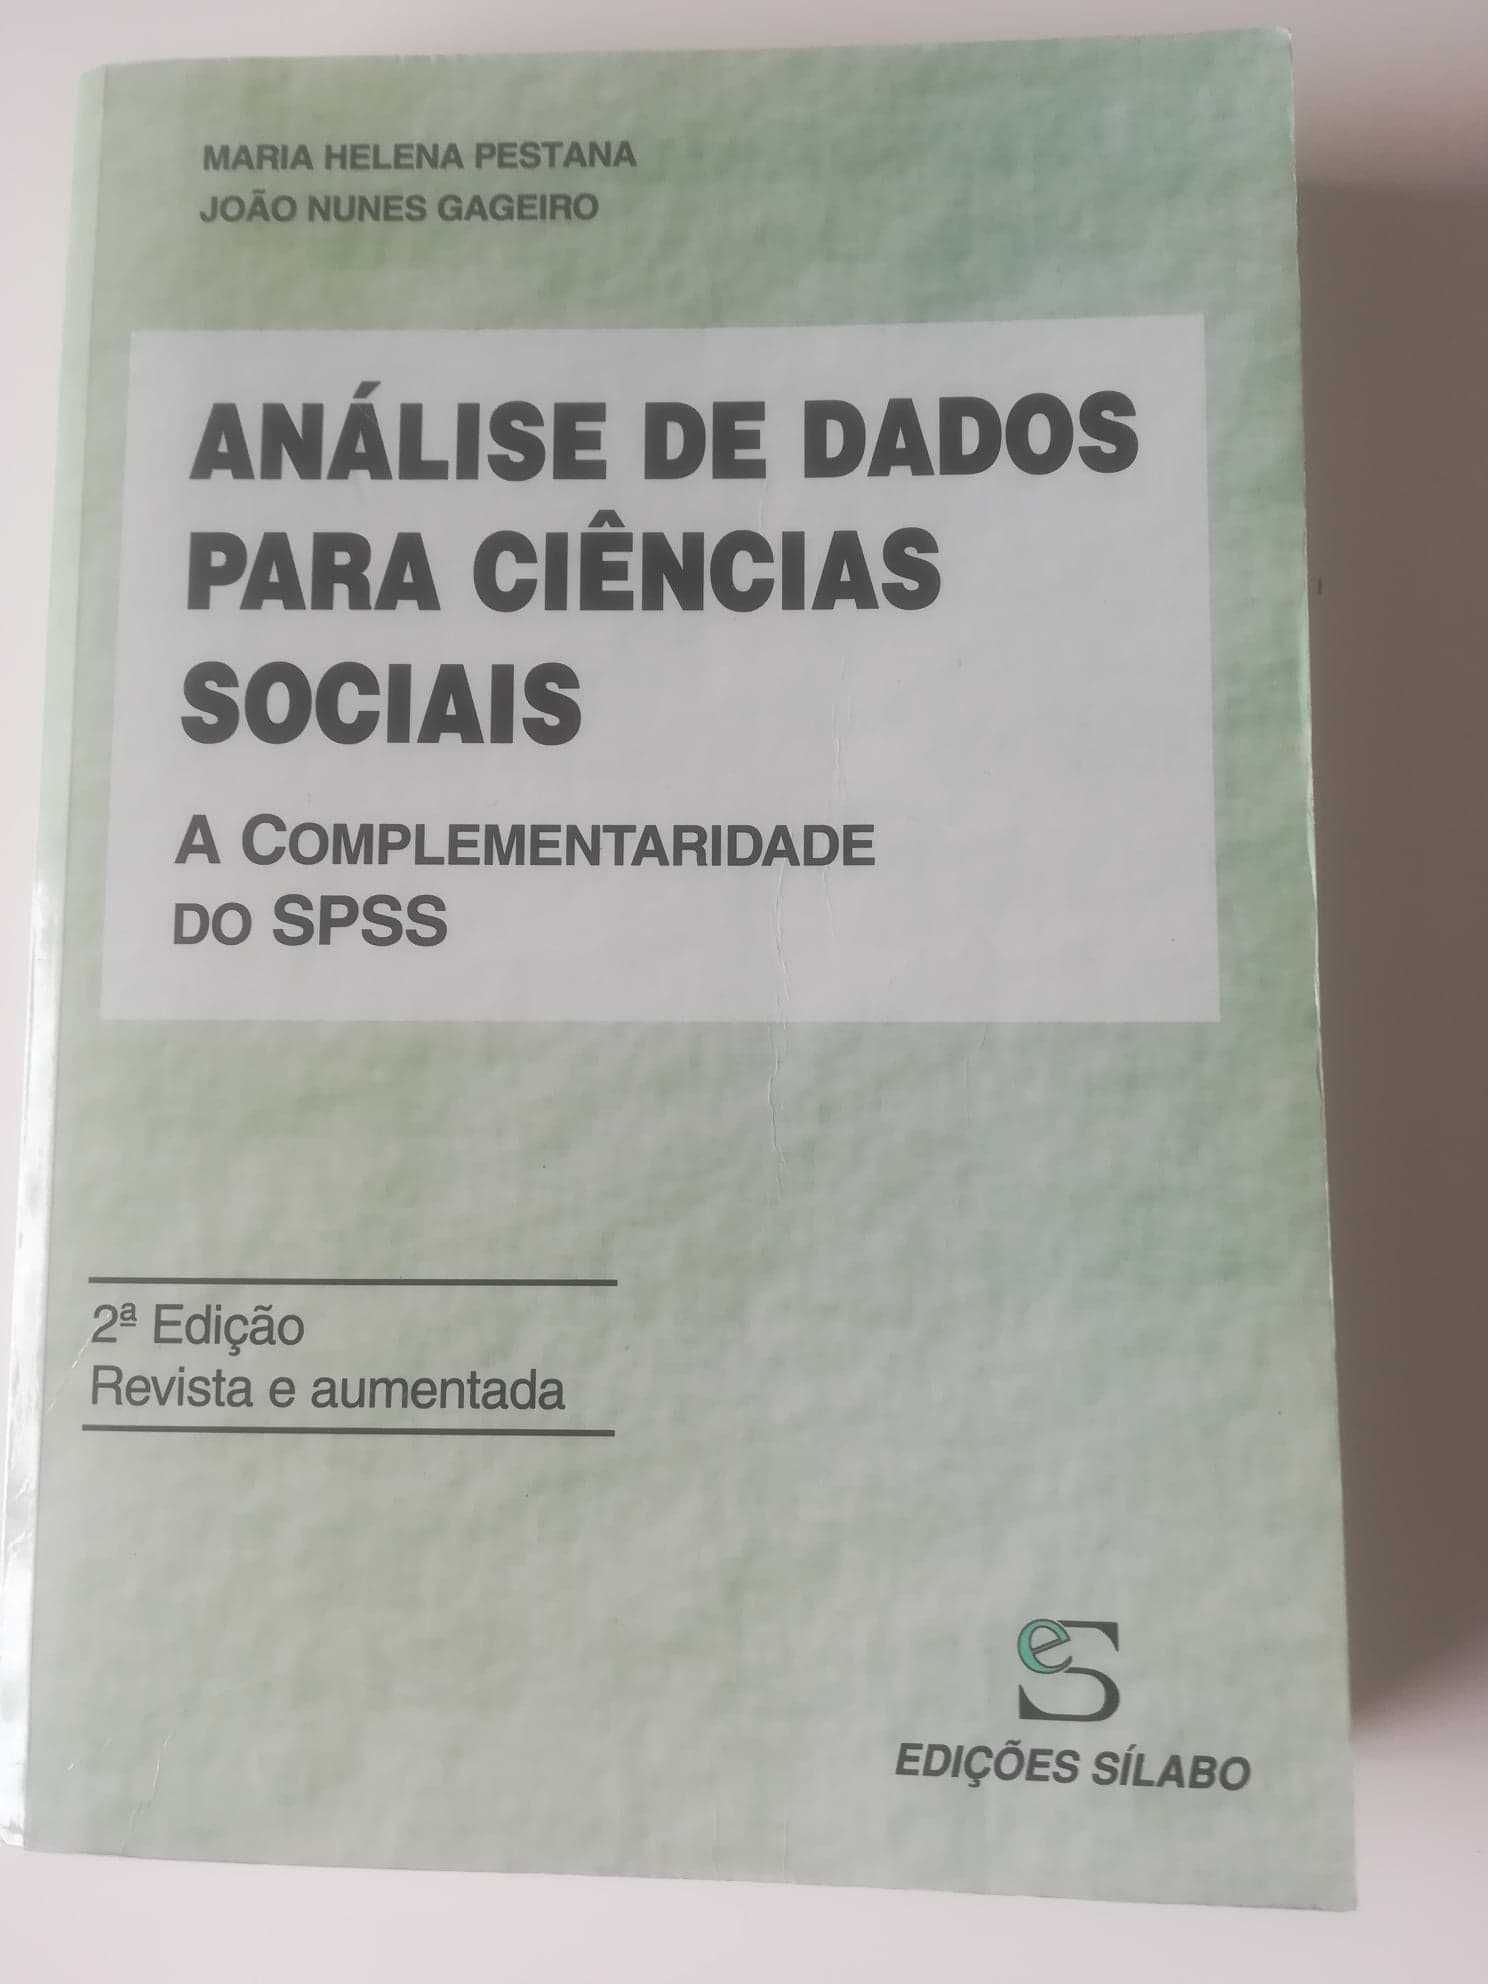 Dois livros sobre análise de dados e SPSS